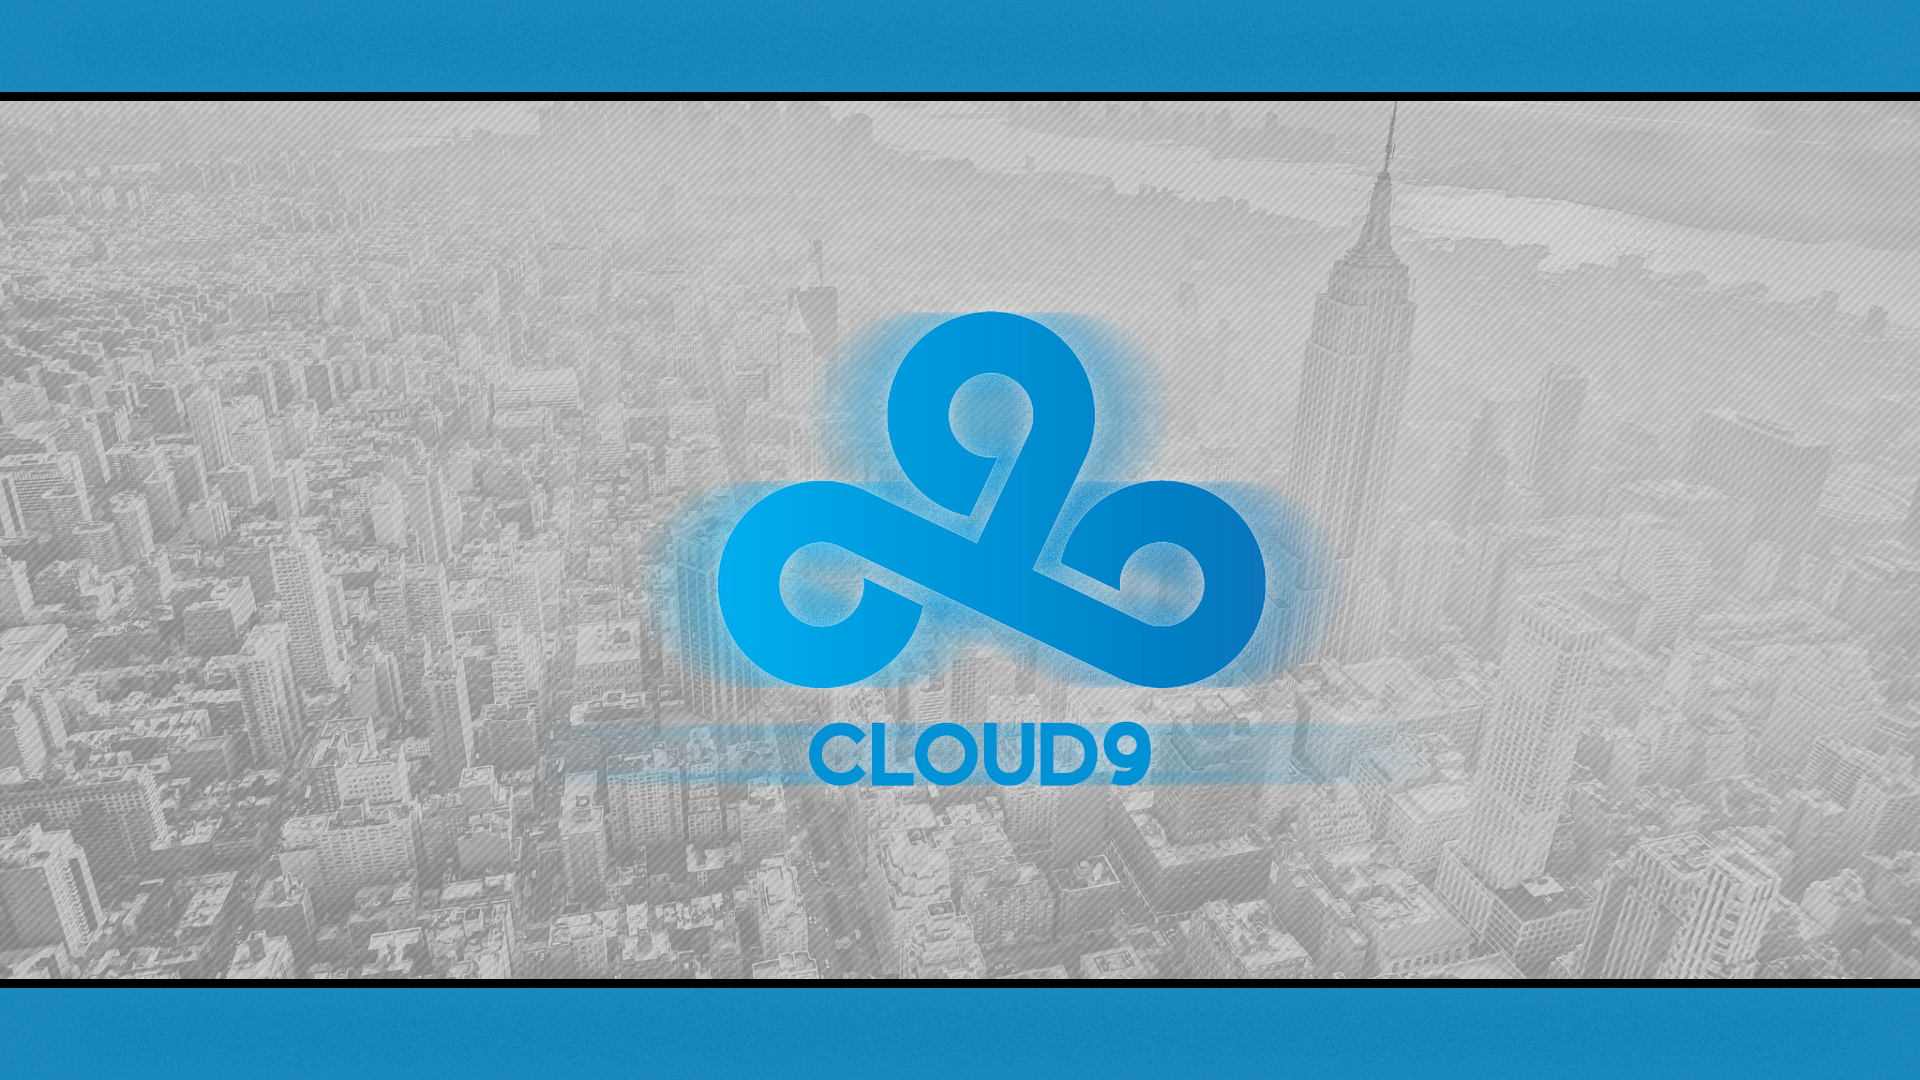 Cloud9 v2 wallpaper